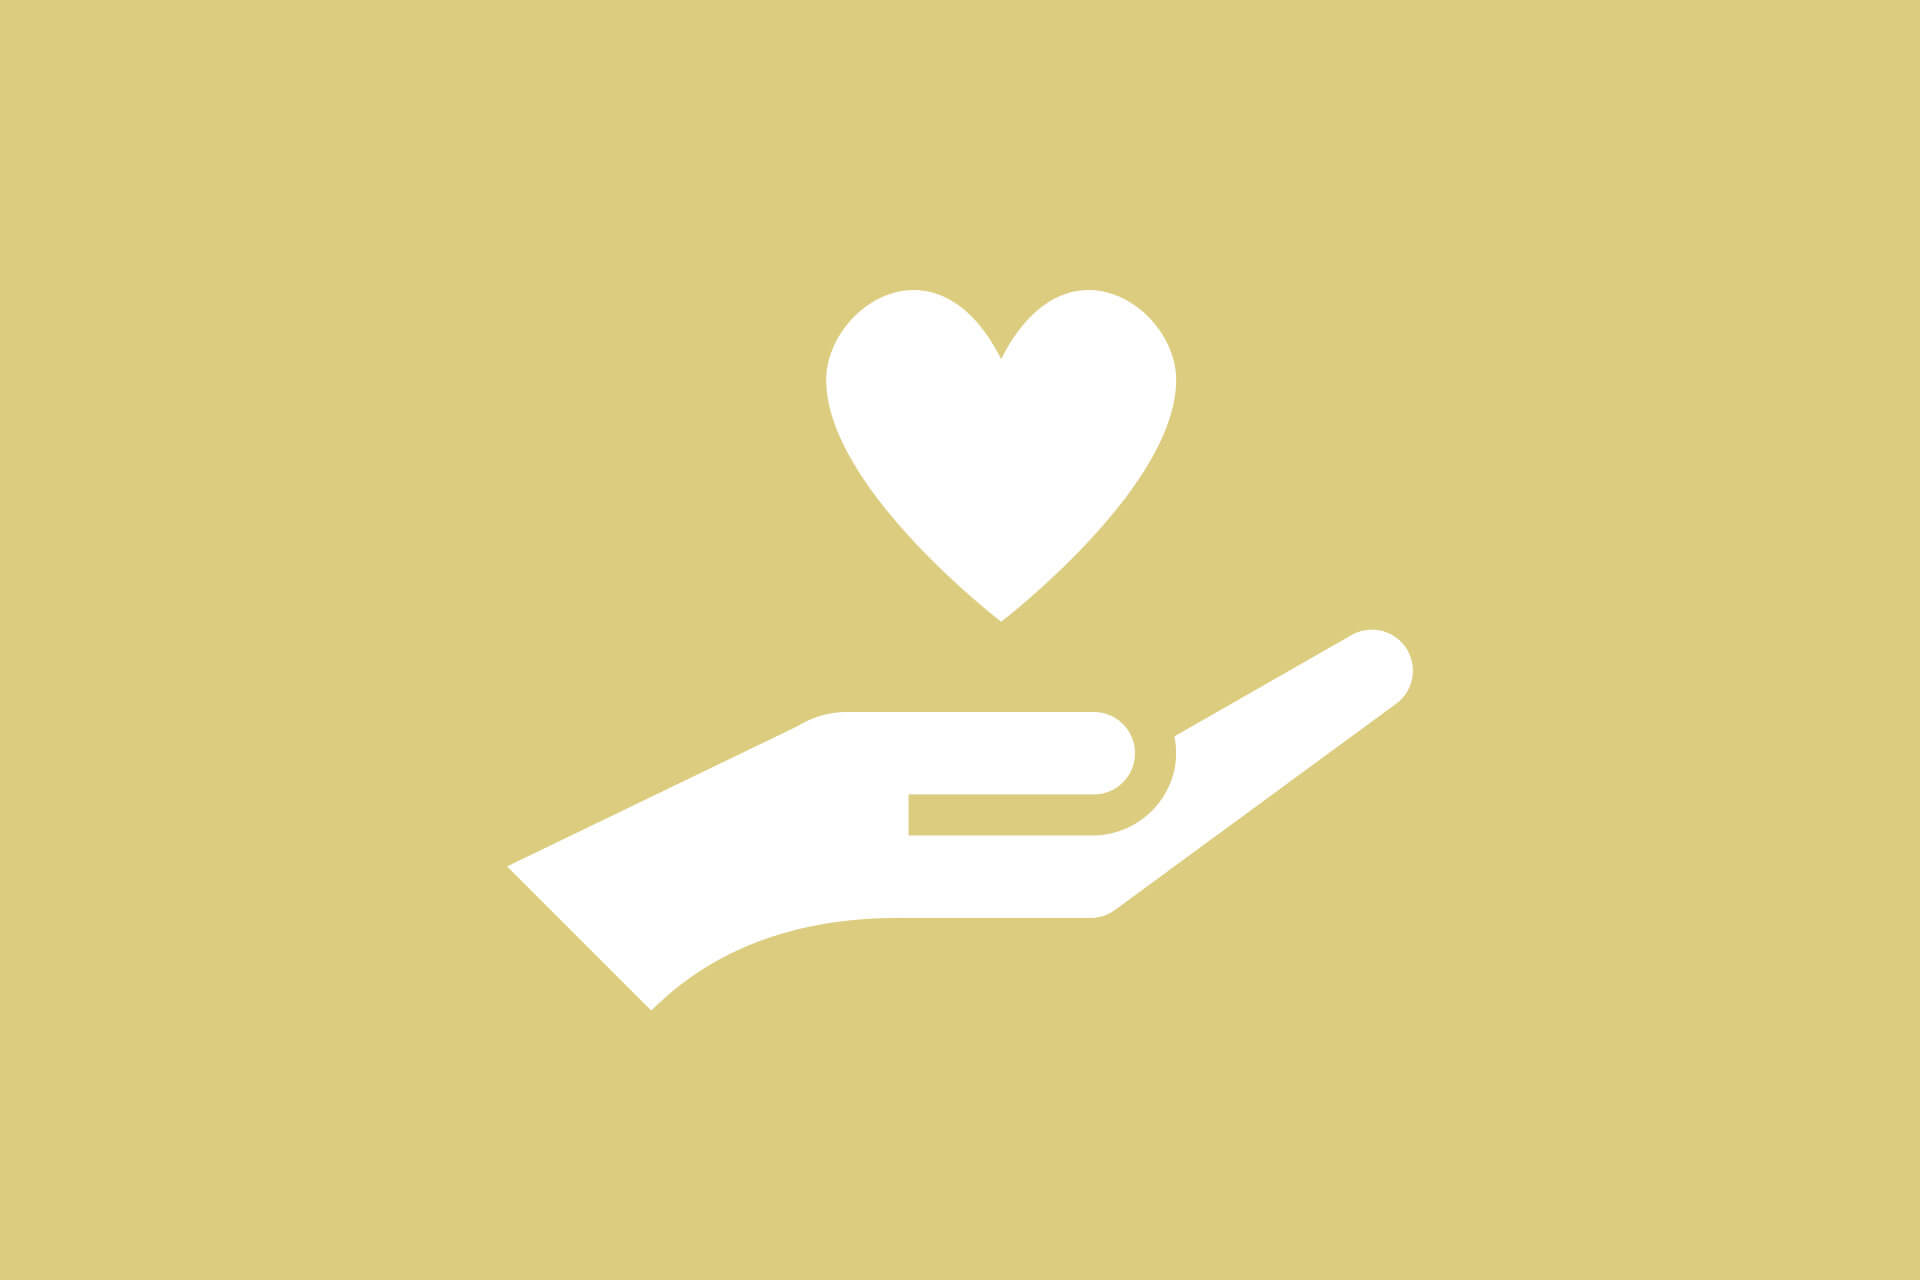 Piktogramm weiß auf gelb: Herz über einer geöffneten Hand